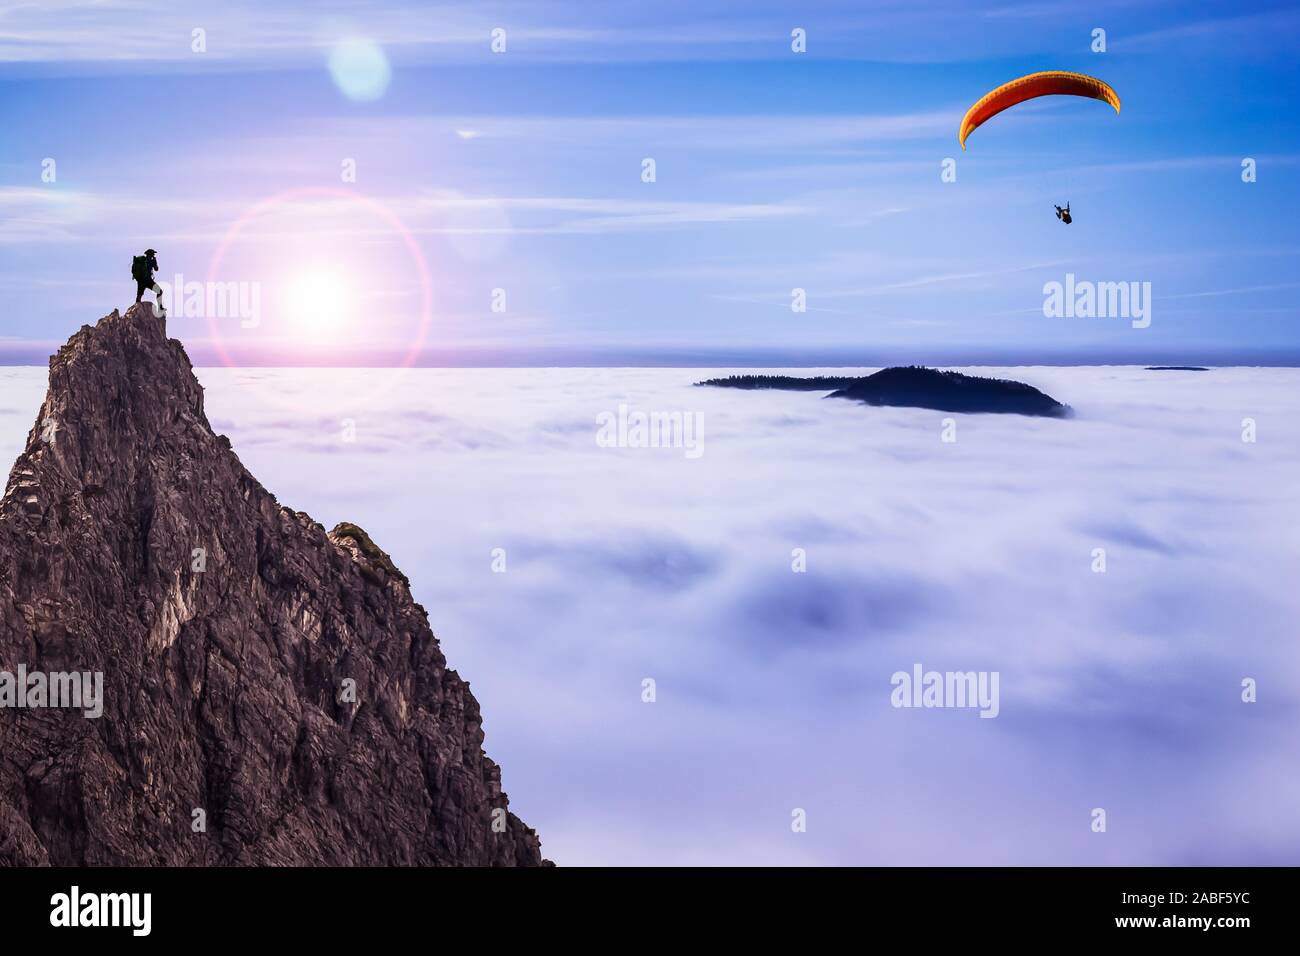 Escursionista presso la sommità di una roccia a guardare un parapendio al di sopra della copertura nuvolosa Foto Stock